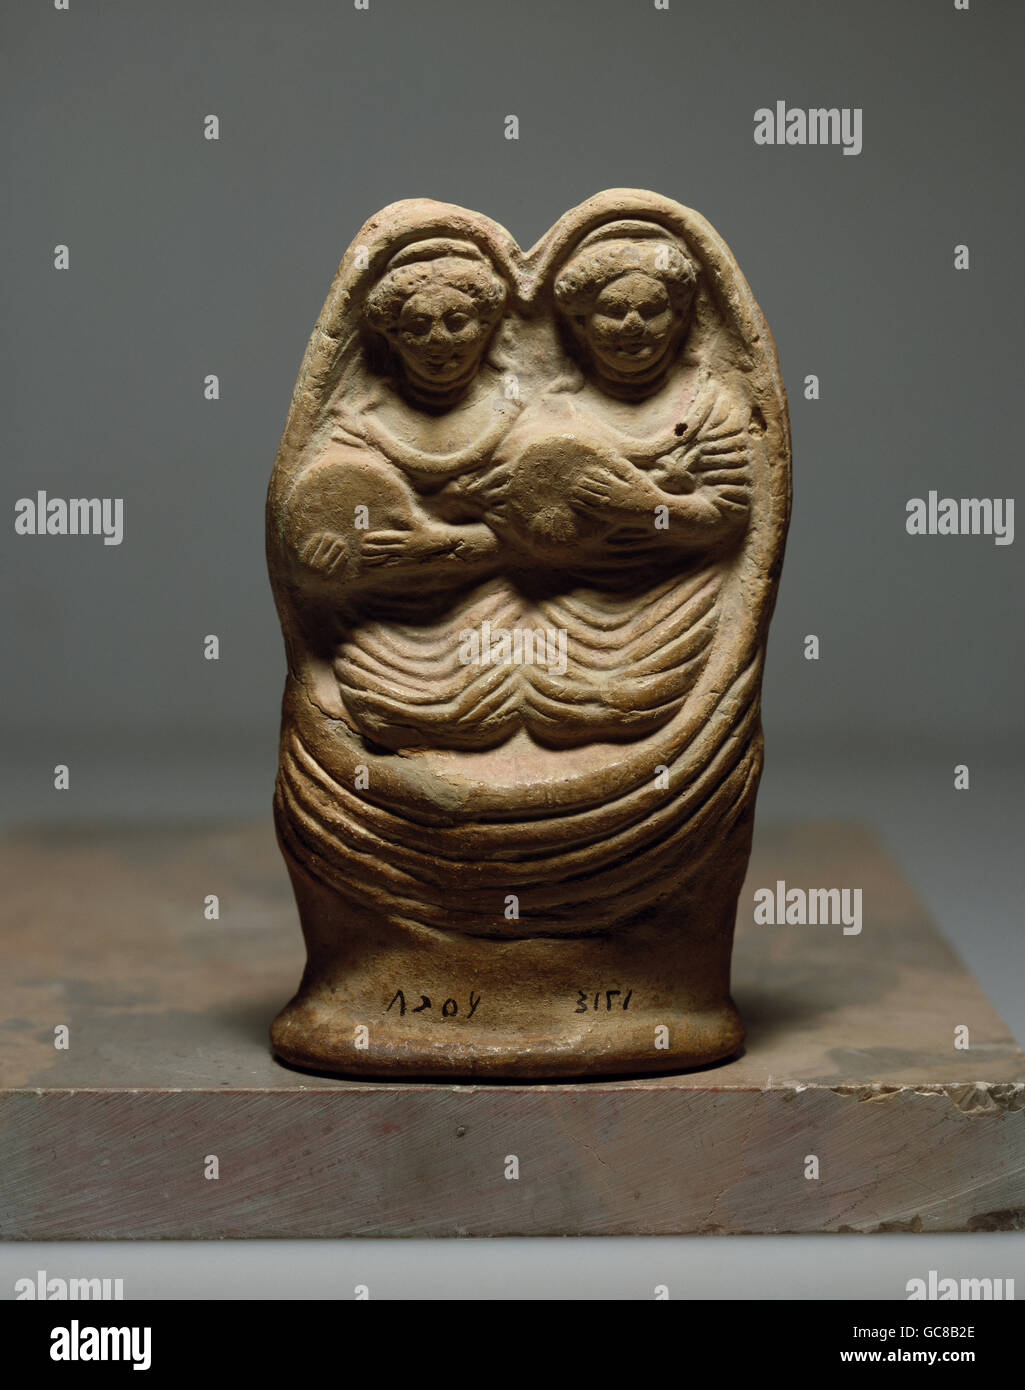 Bildende Kunst, antike, Römisches Reich, Skulptur, zwei Frauen mit Tamburin, Lehm, Salamiya, Syrien, 2. Jh., Nationalmuseum in Damaskus Stockfoto